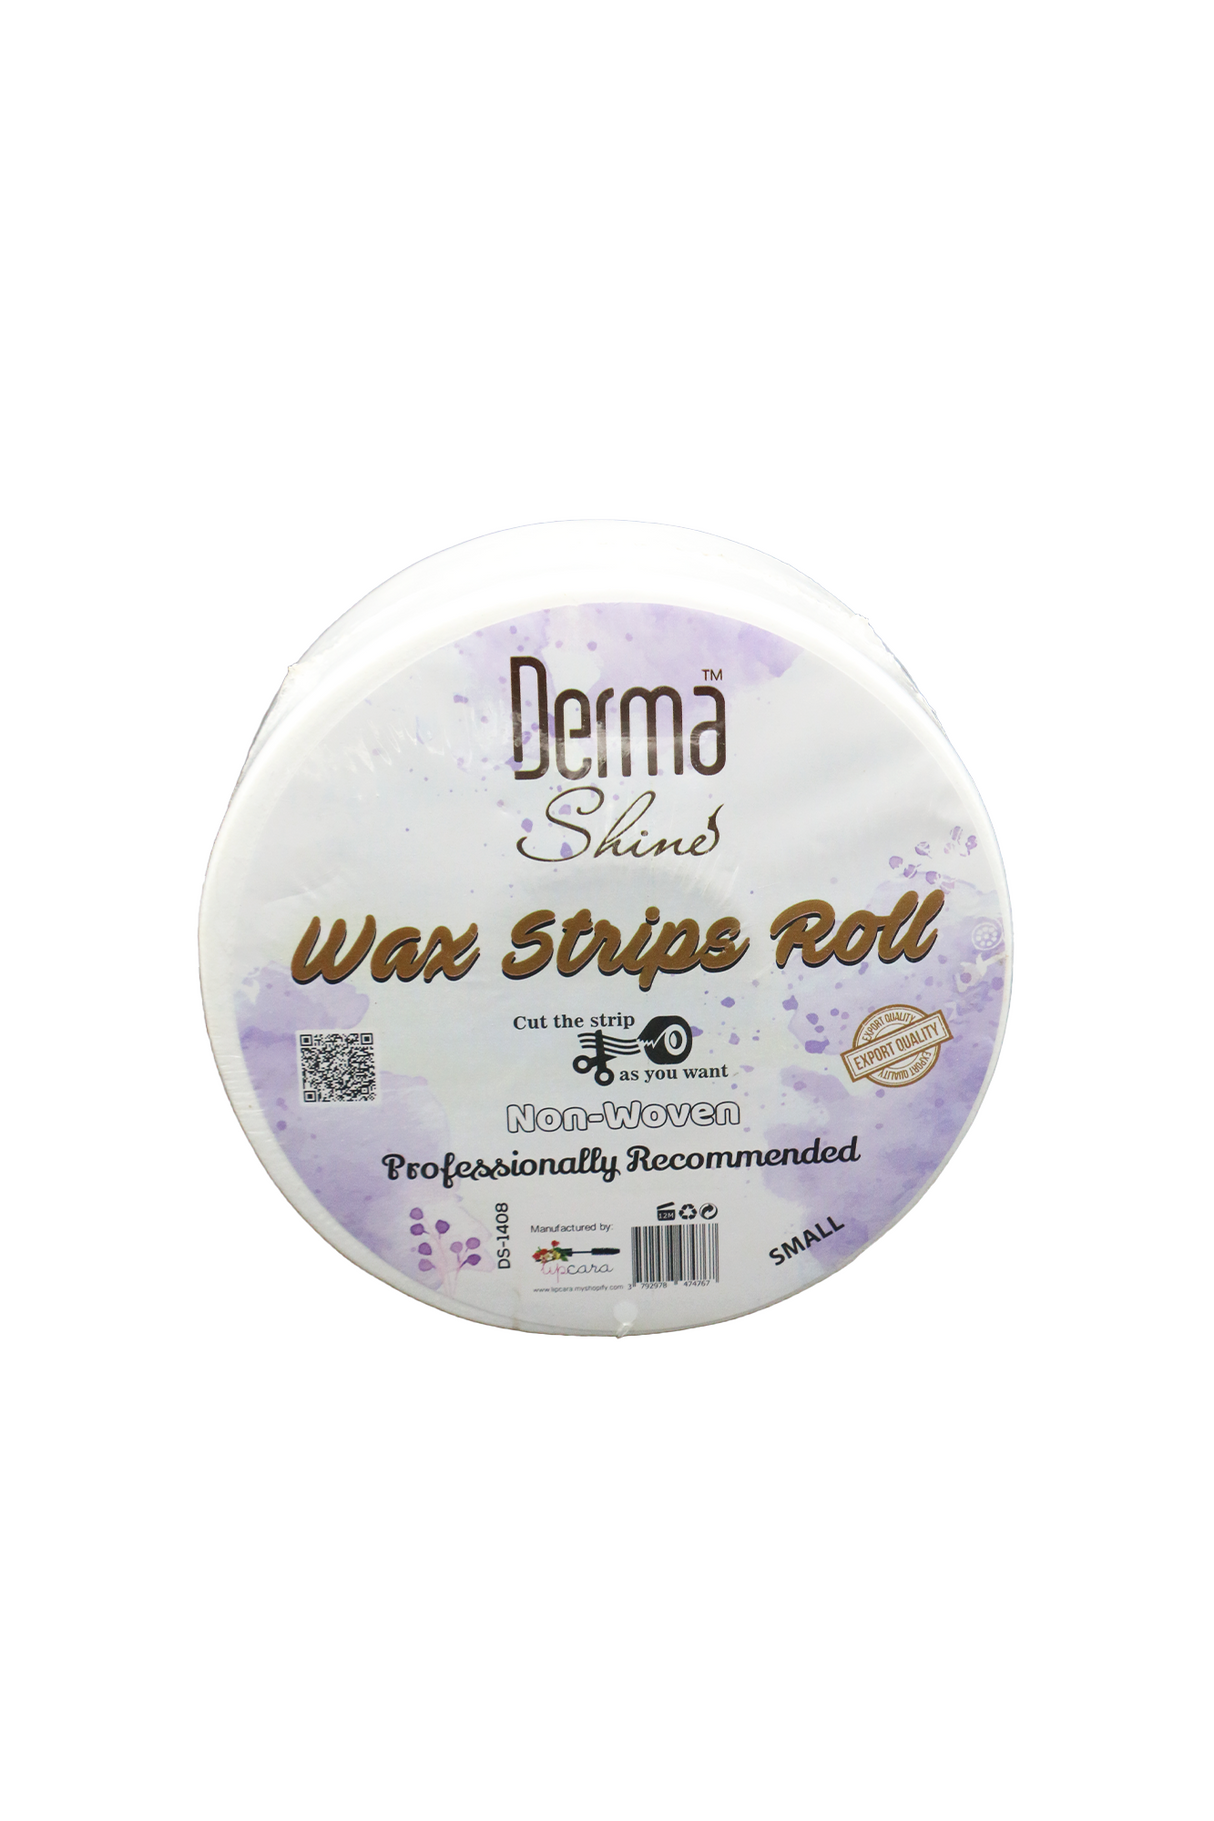 derma shine wax strips roll 50y